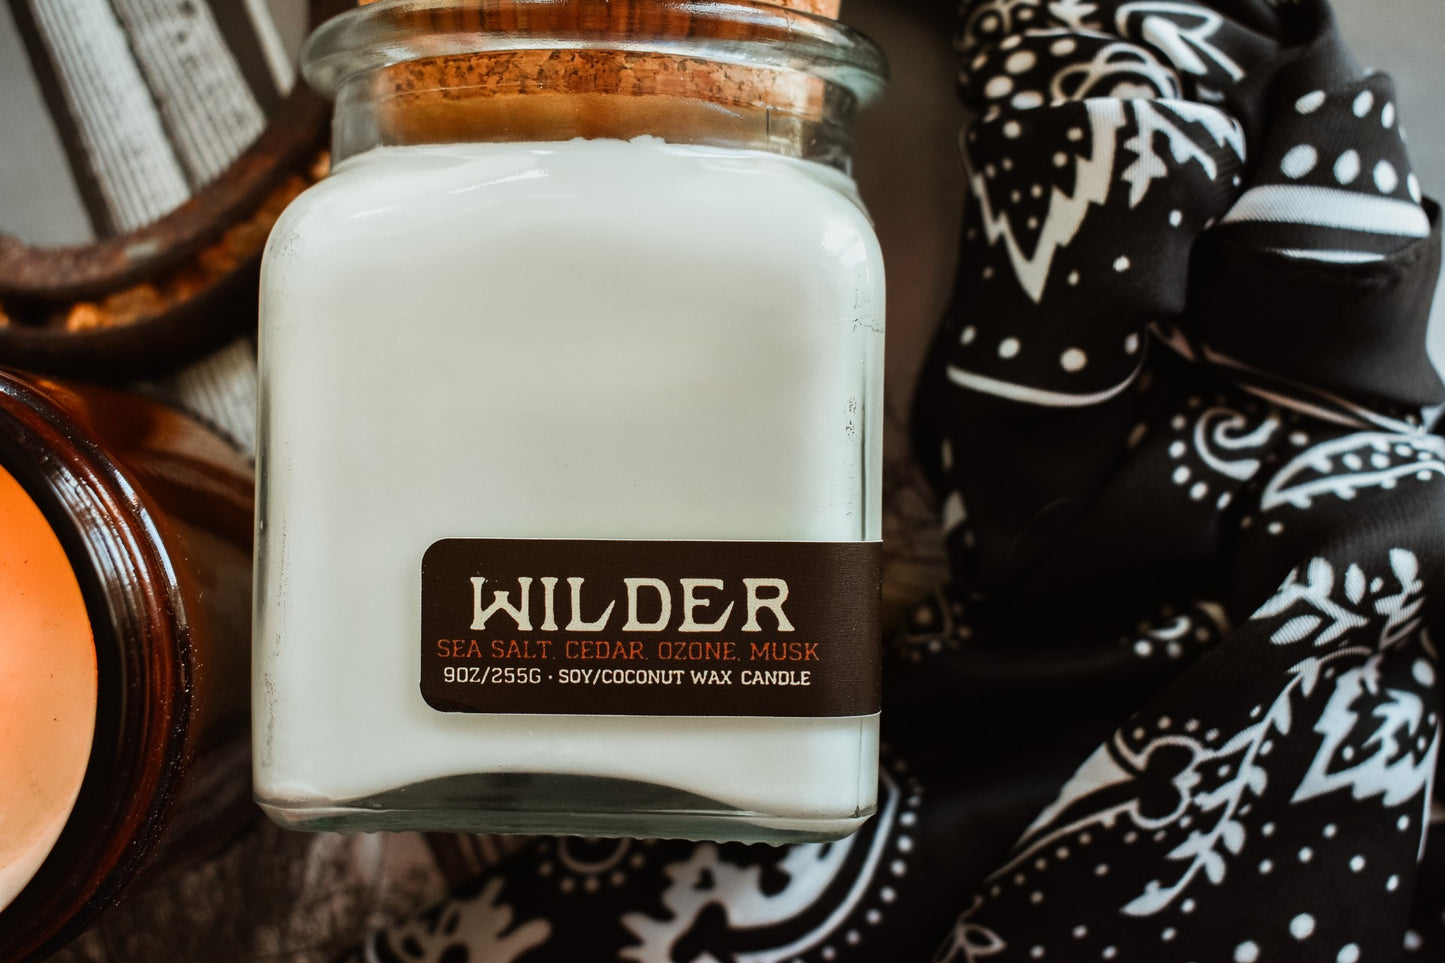 WILDER - Sea Salt, Cedar, Ozone